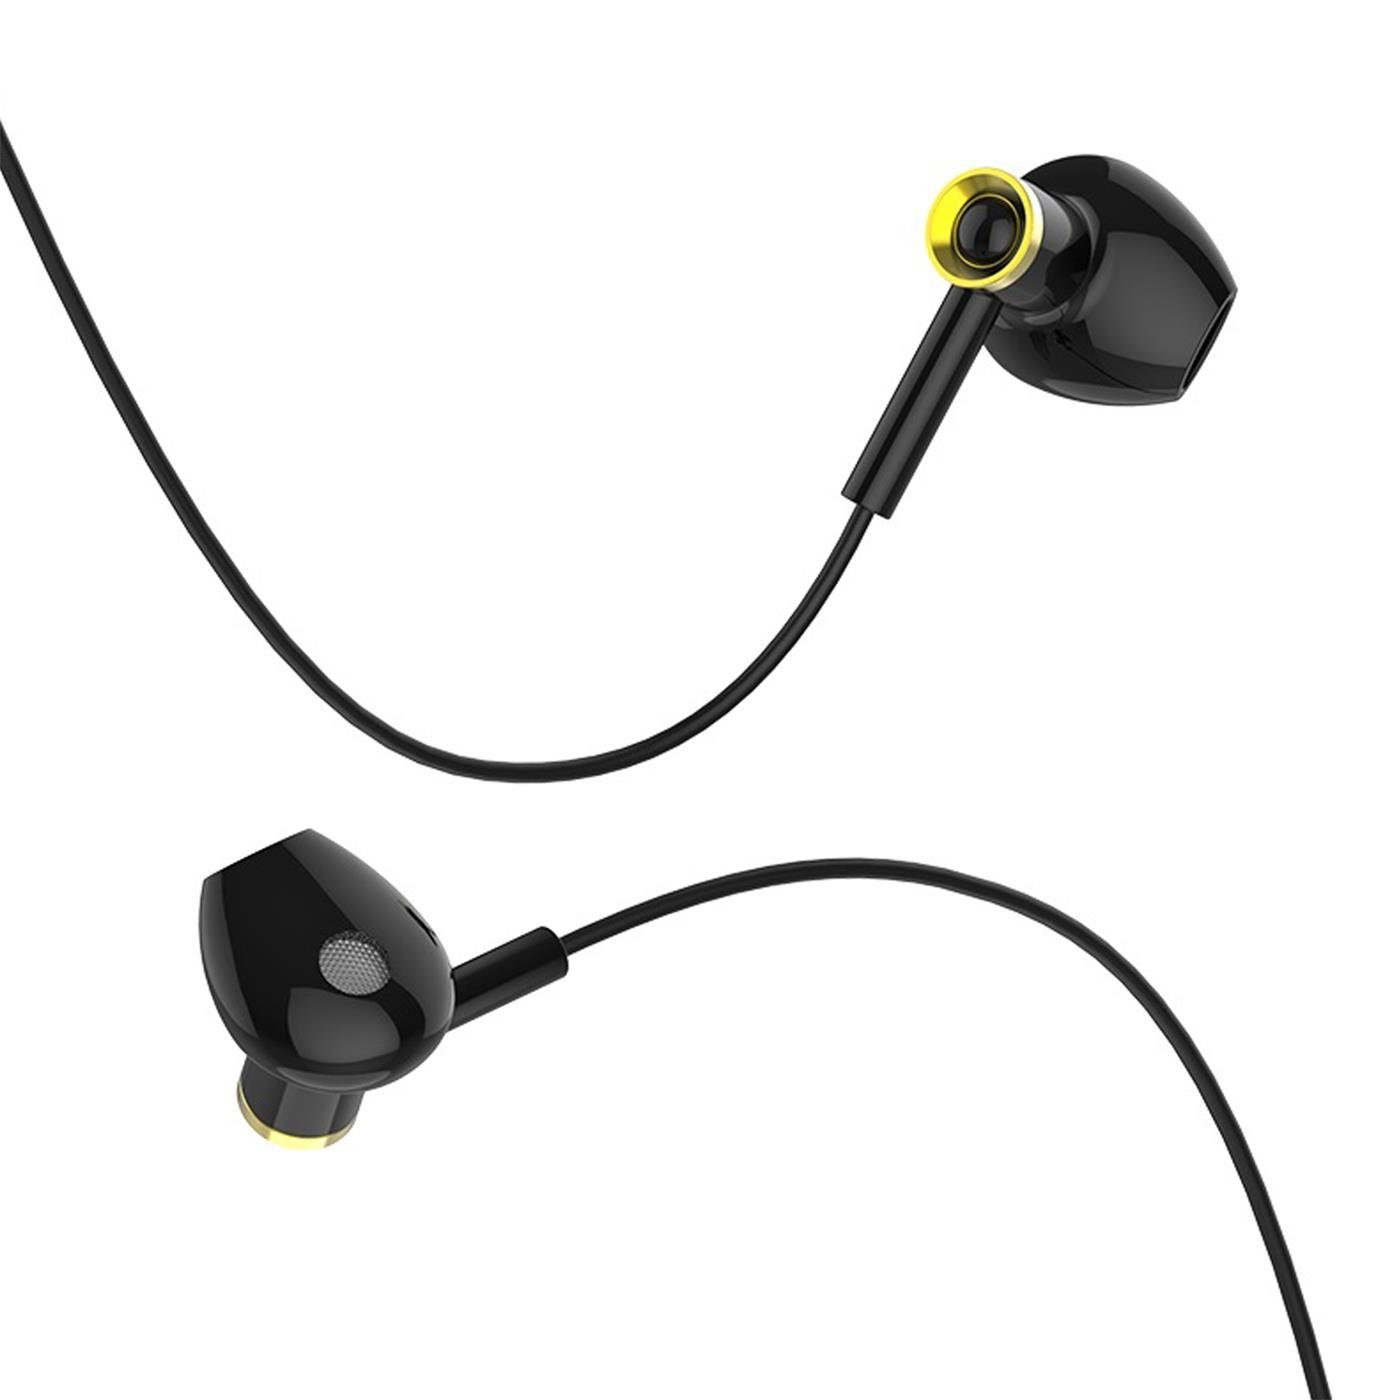 Headset Klinke In mit M47 Ear Mikrofon HOCO mm 3.5 Klinke Smartphone-Headset Beats) (Köpfhörer Schwarz Canorous 3,5mm